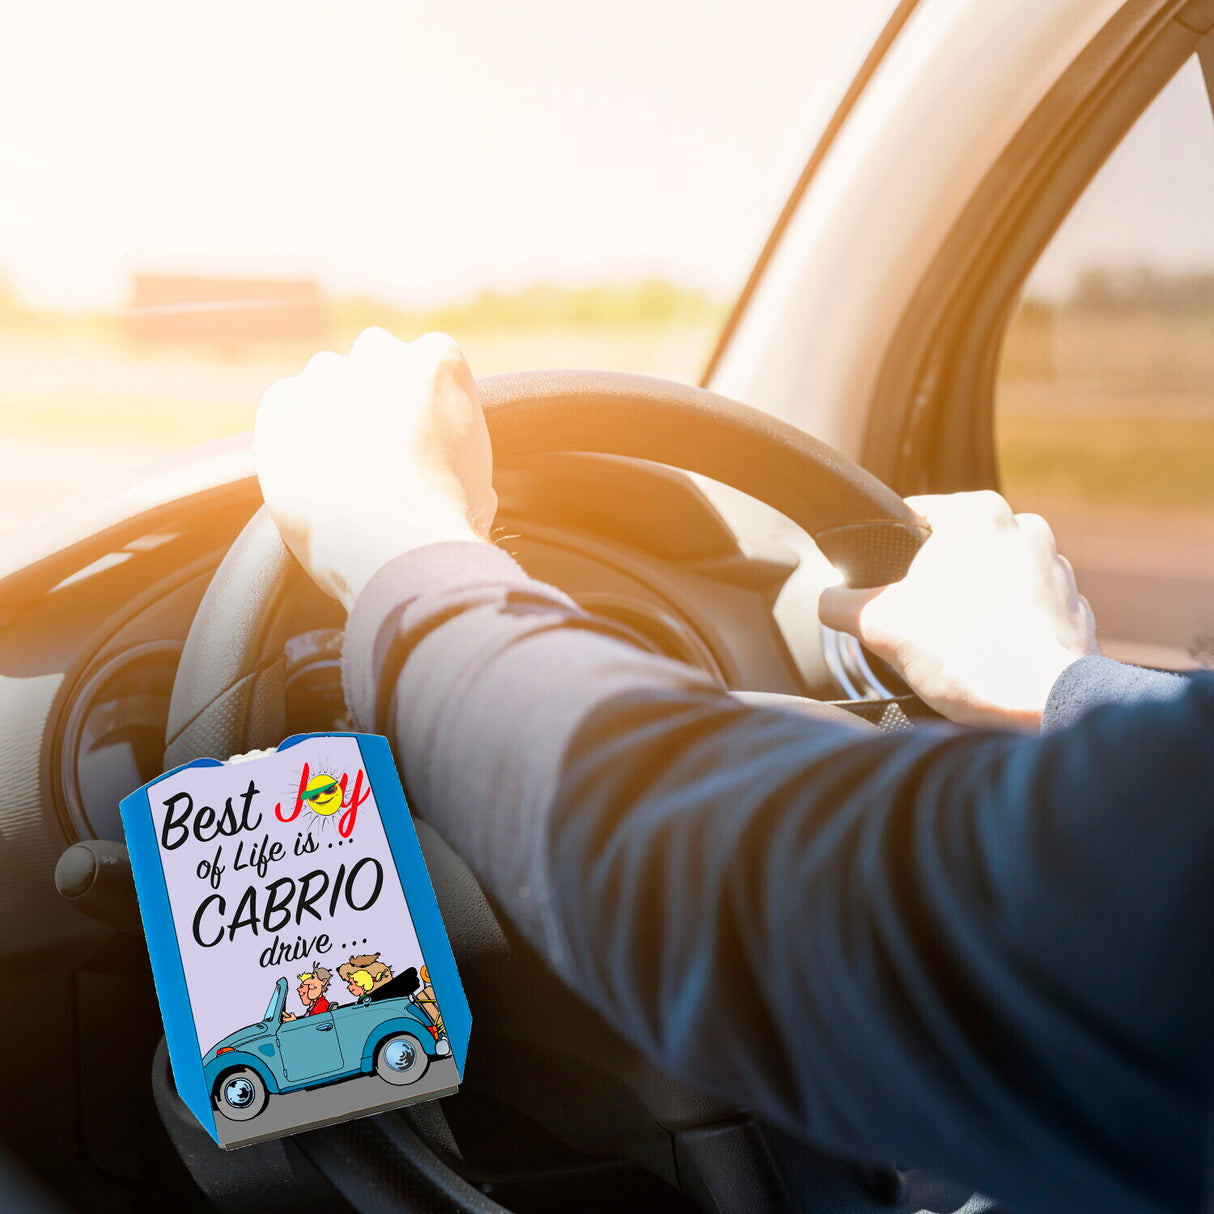 Parkscheibe Best Joy of Life is Cabrio drive - Jetzt kaufen und losfahren!  –